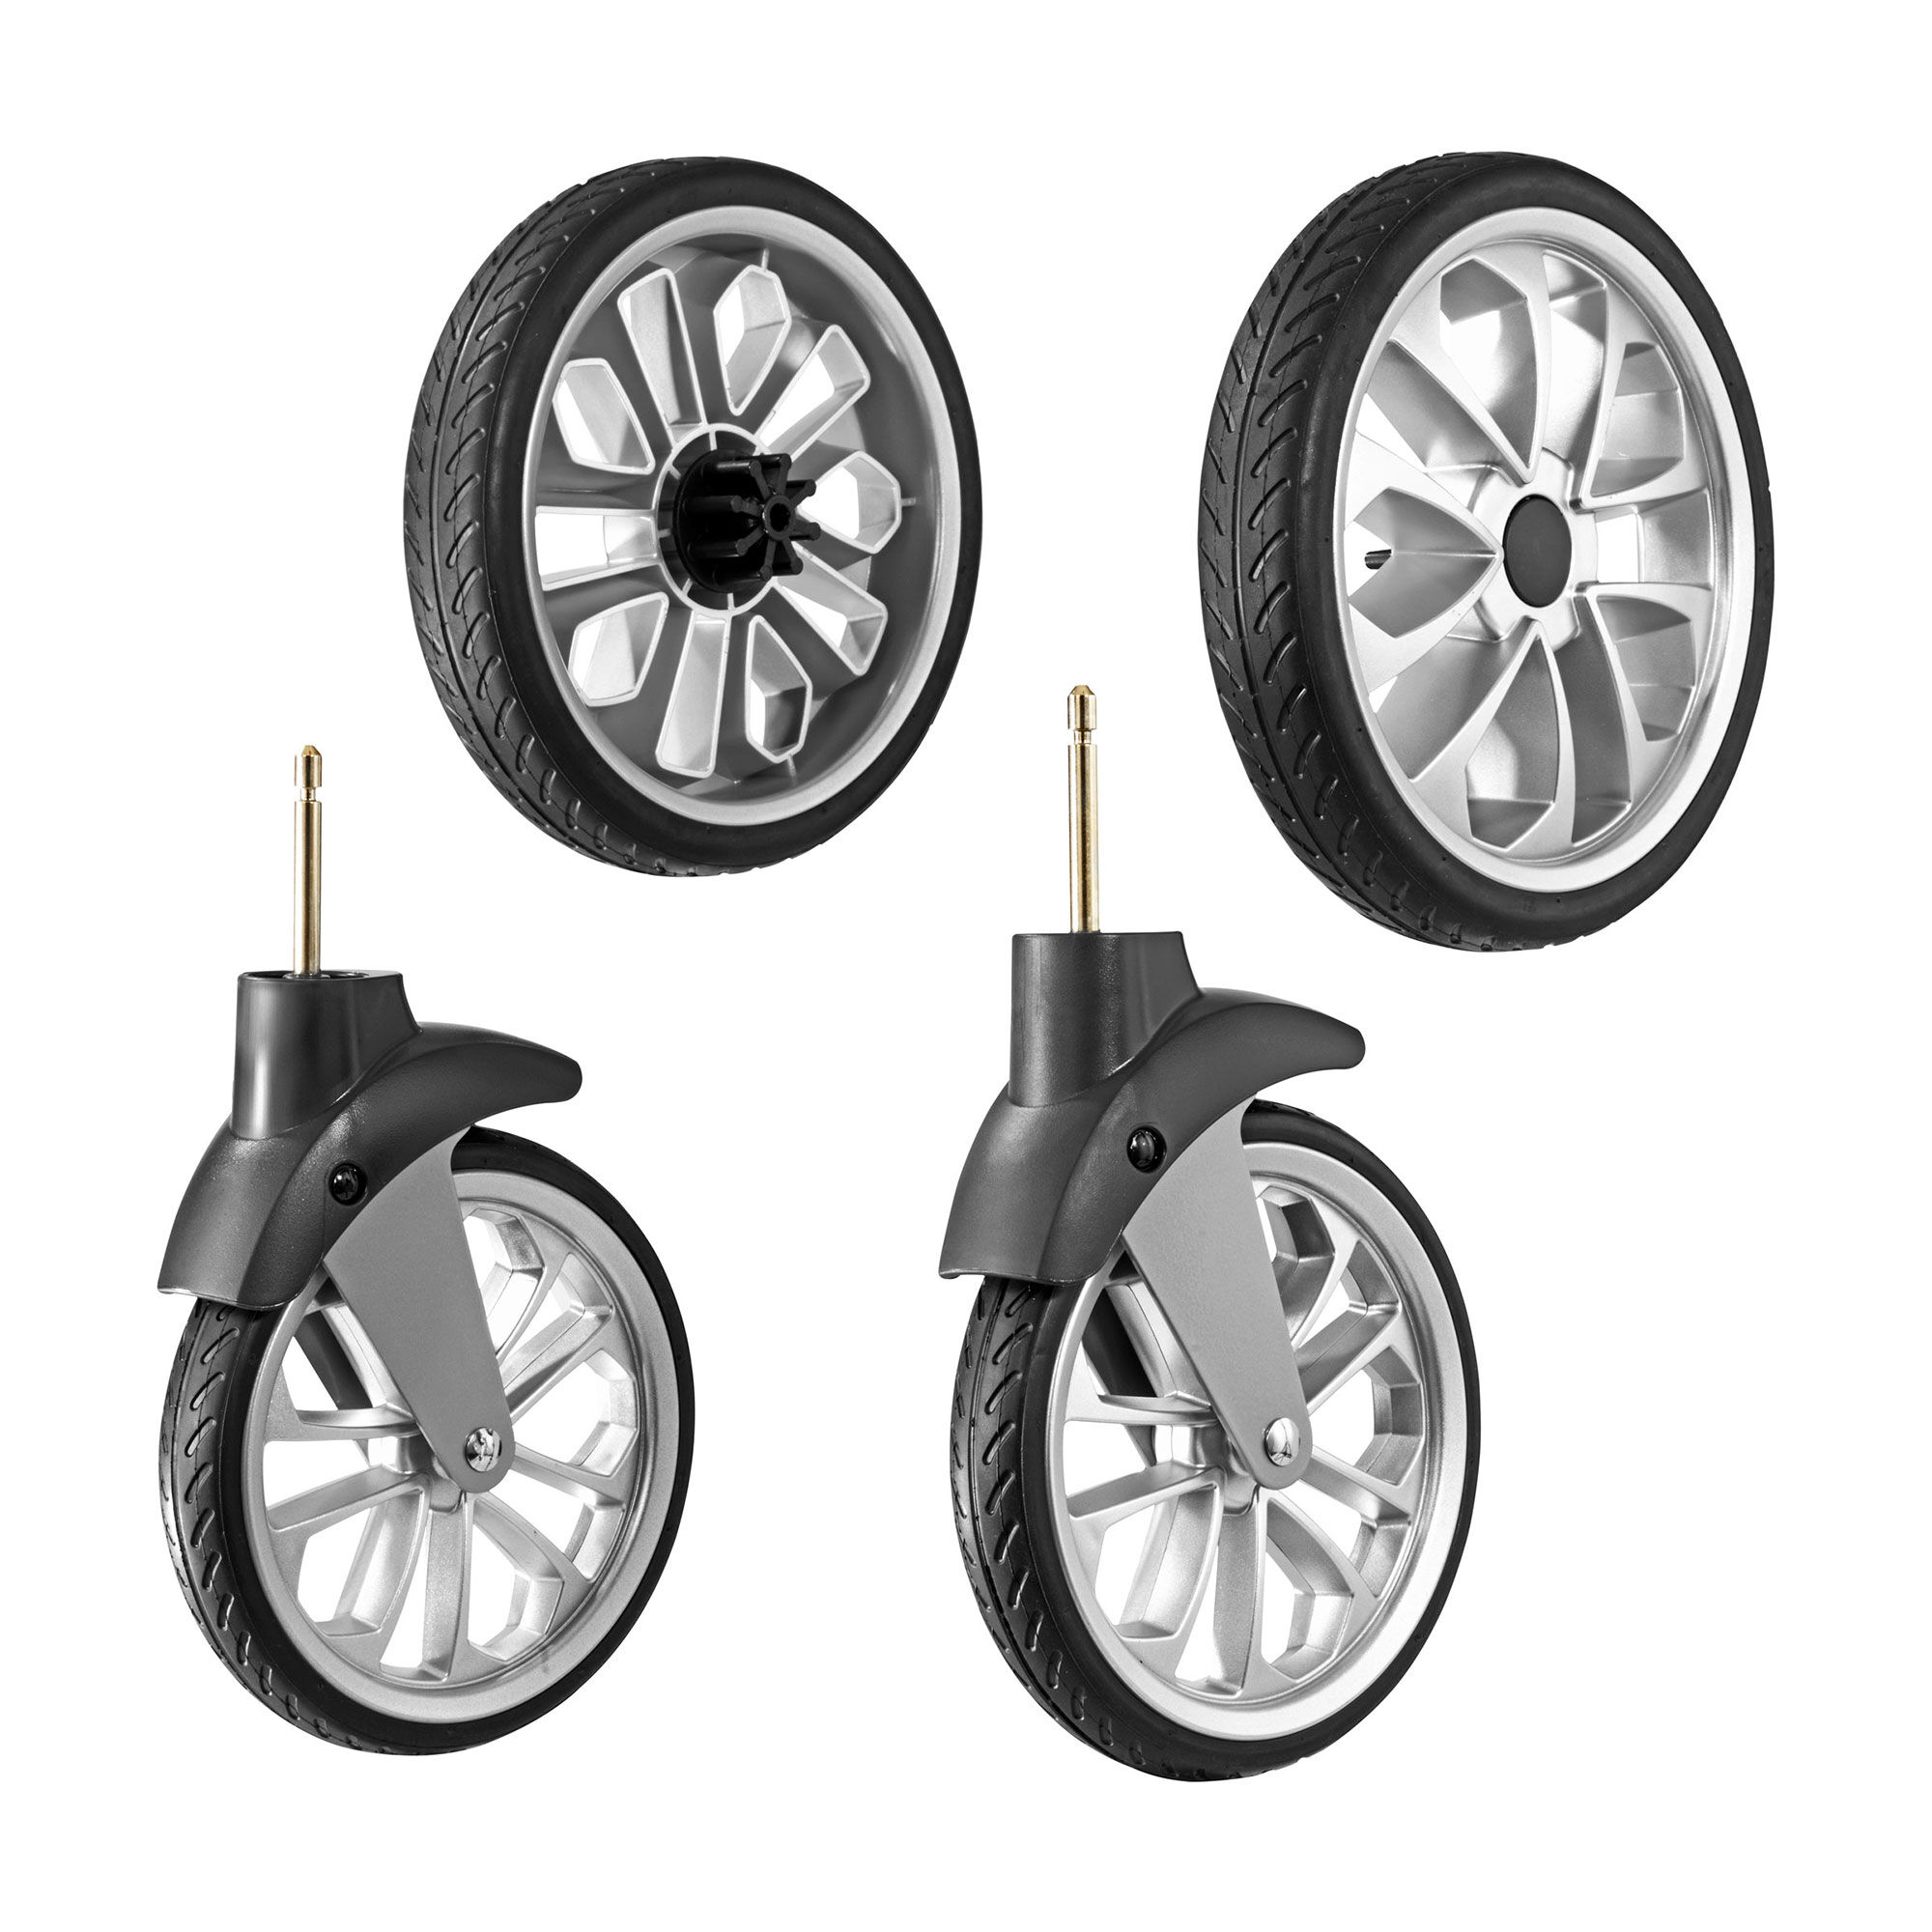 rubber stroller wheels